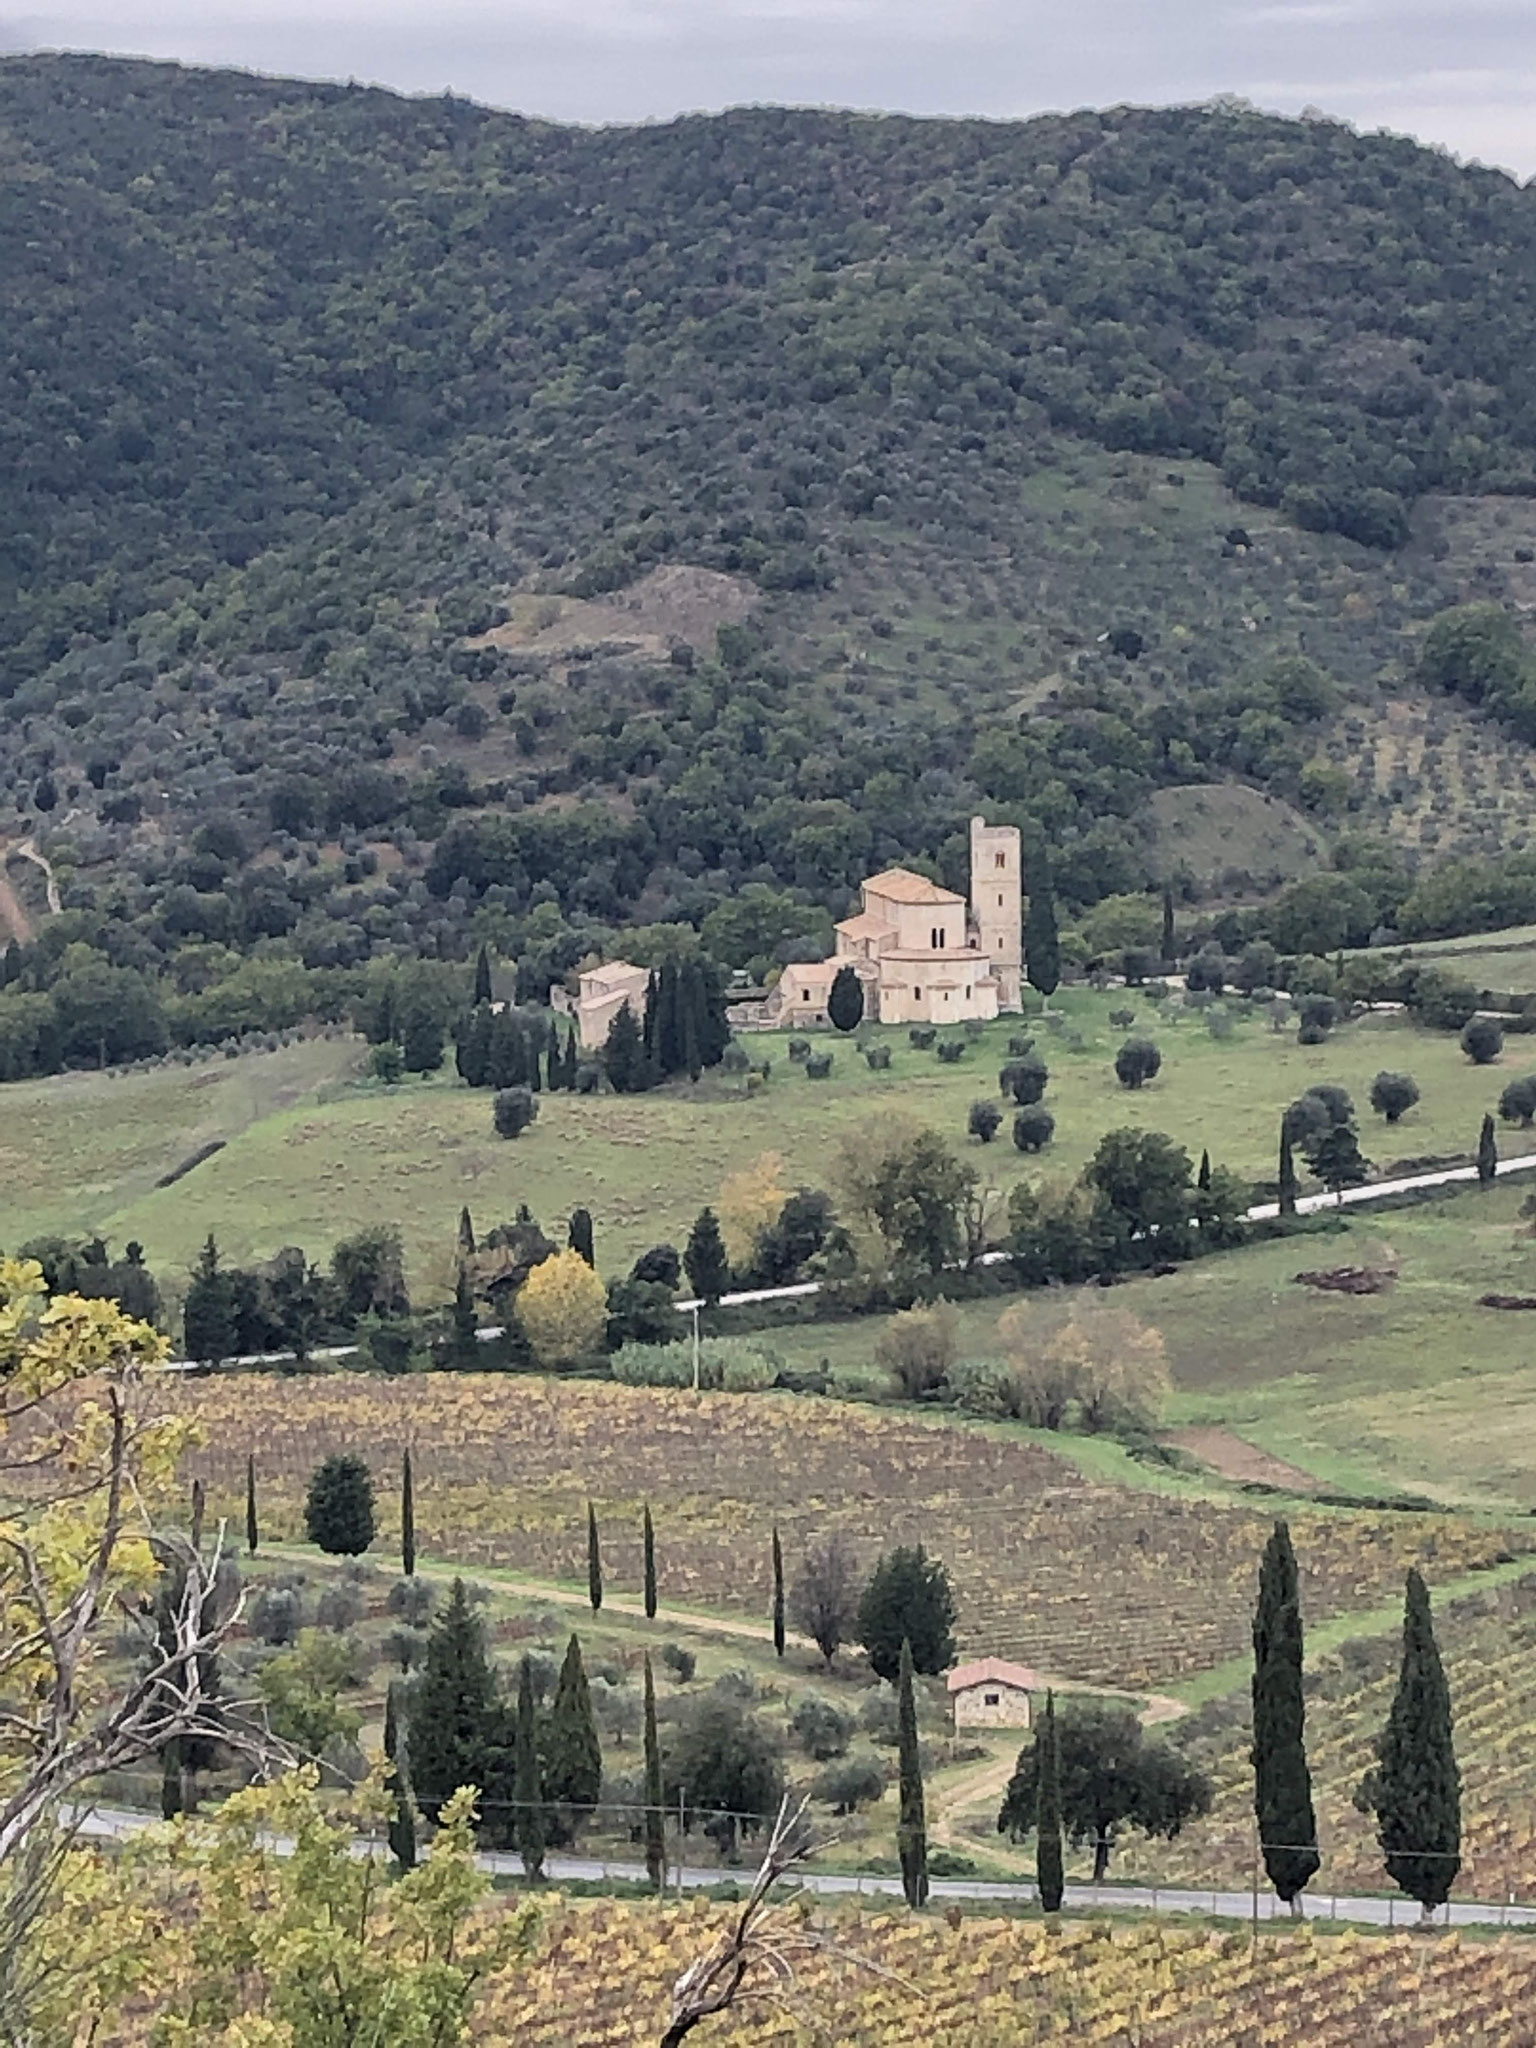 The Tuscany landscape.